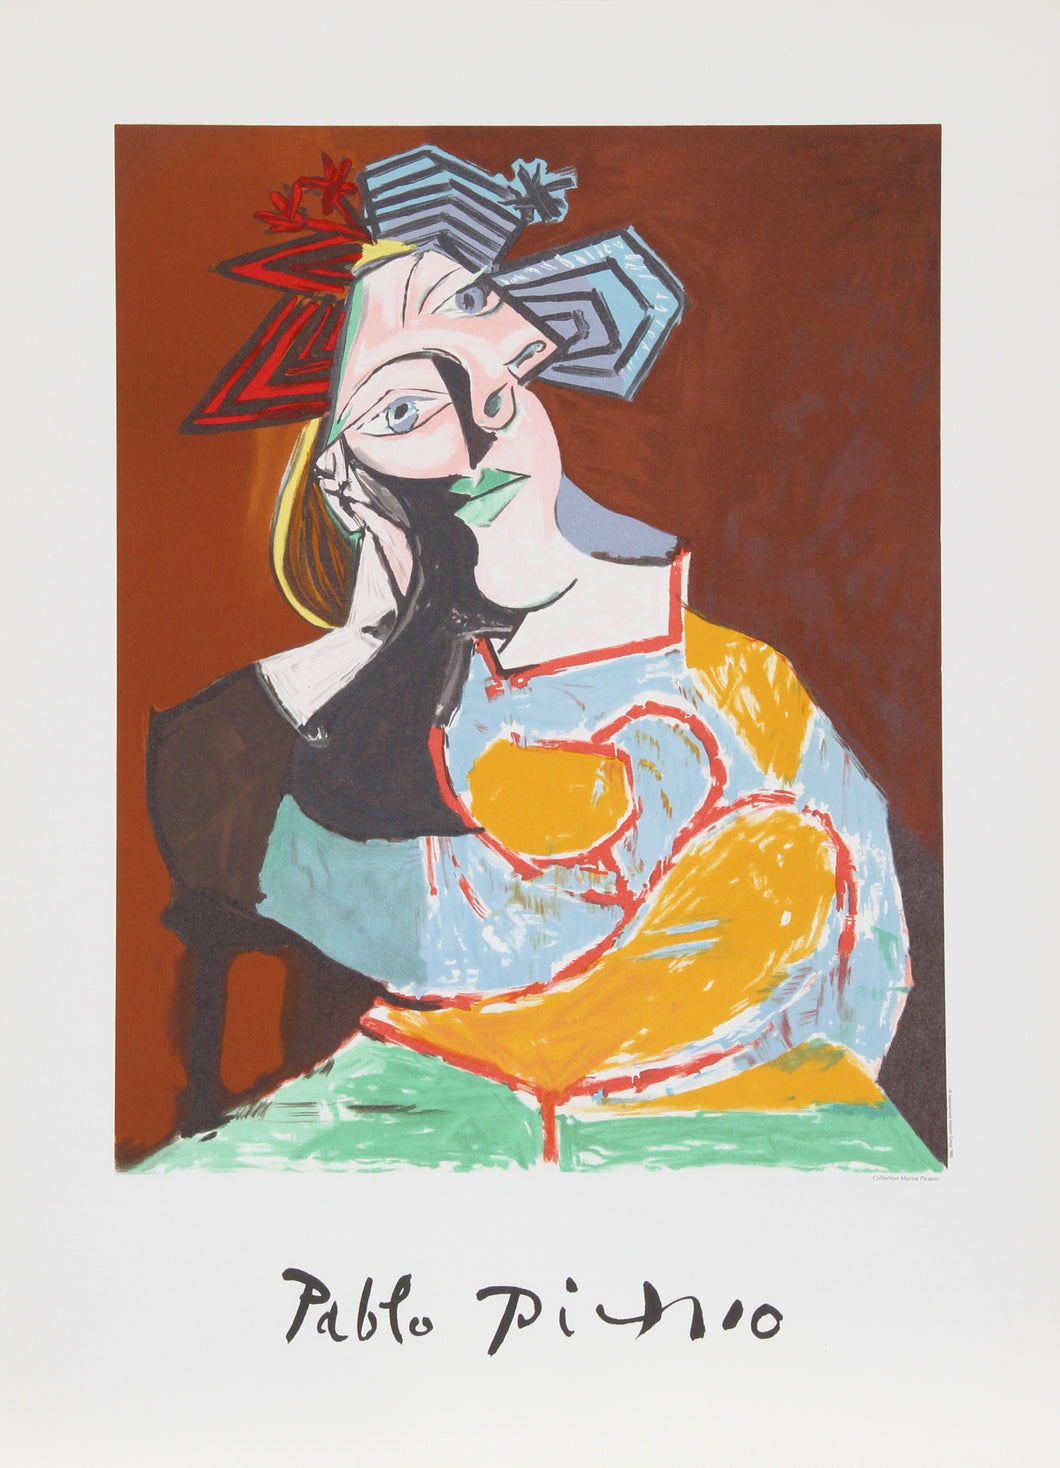 Pablo Picasso, Femme Accoudee au Drapeau Bleu et Rouge, 10-C-k, Lithograph